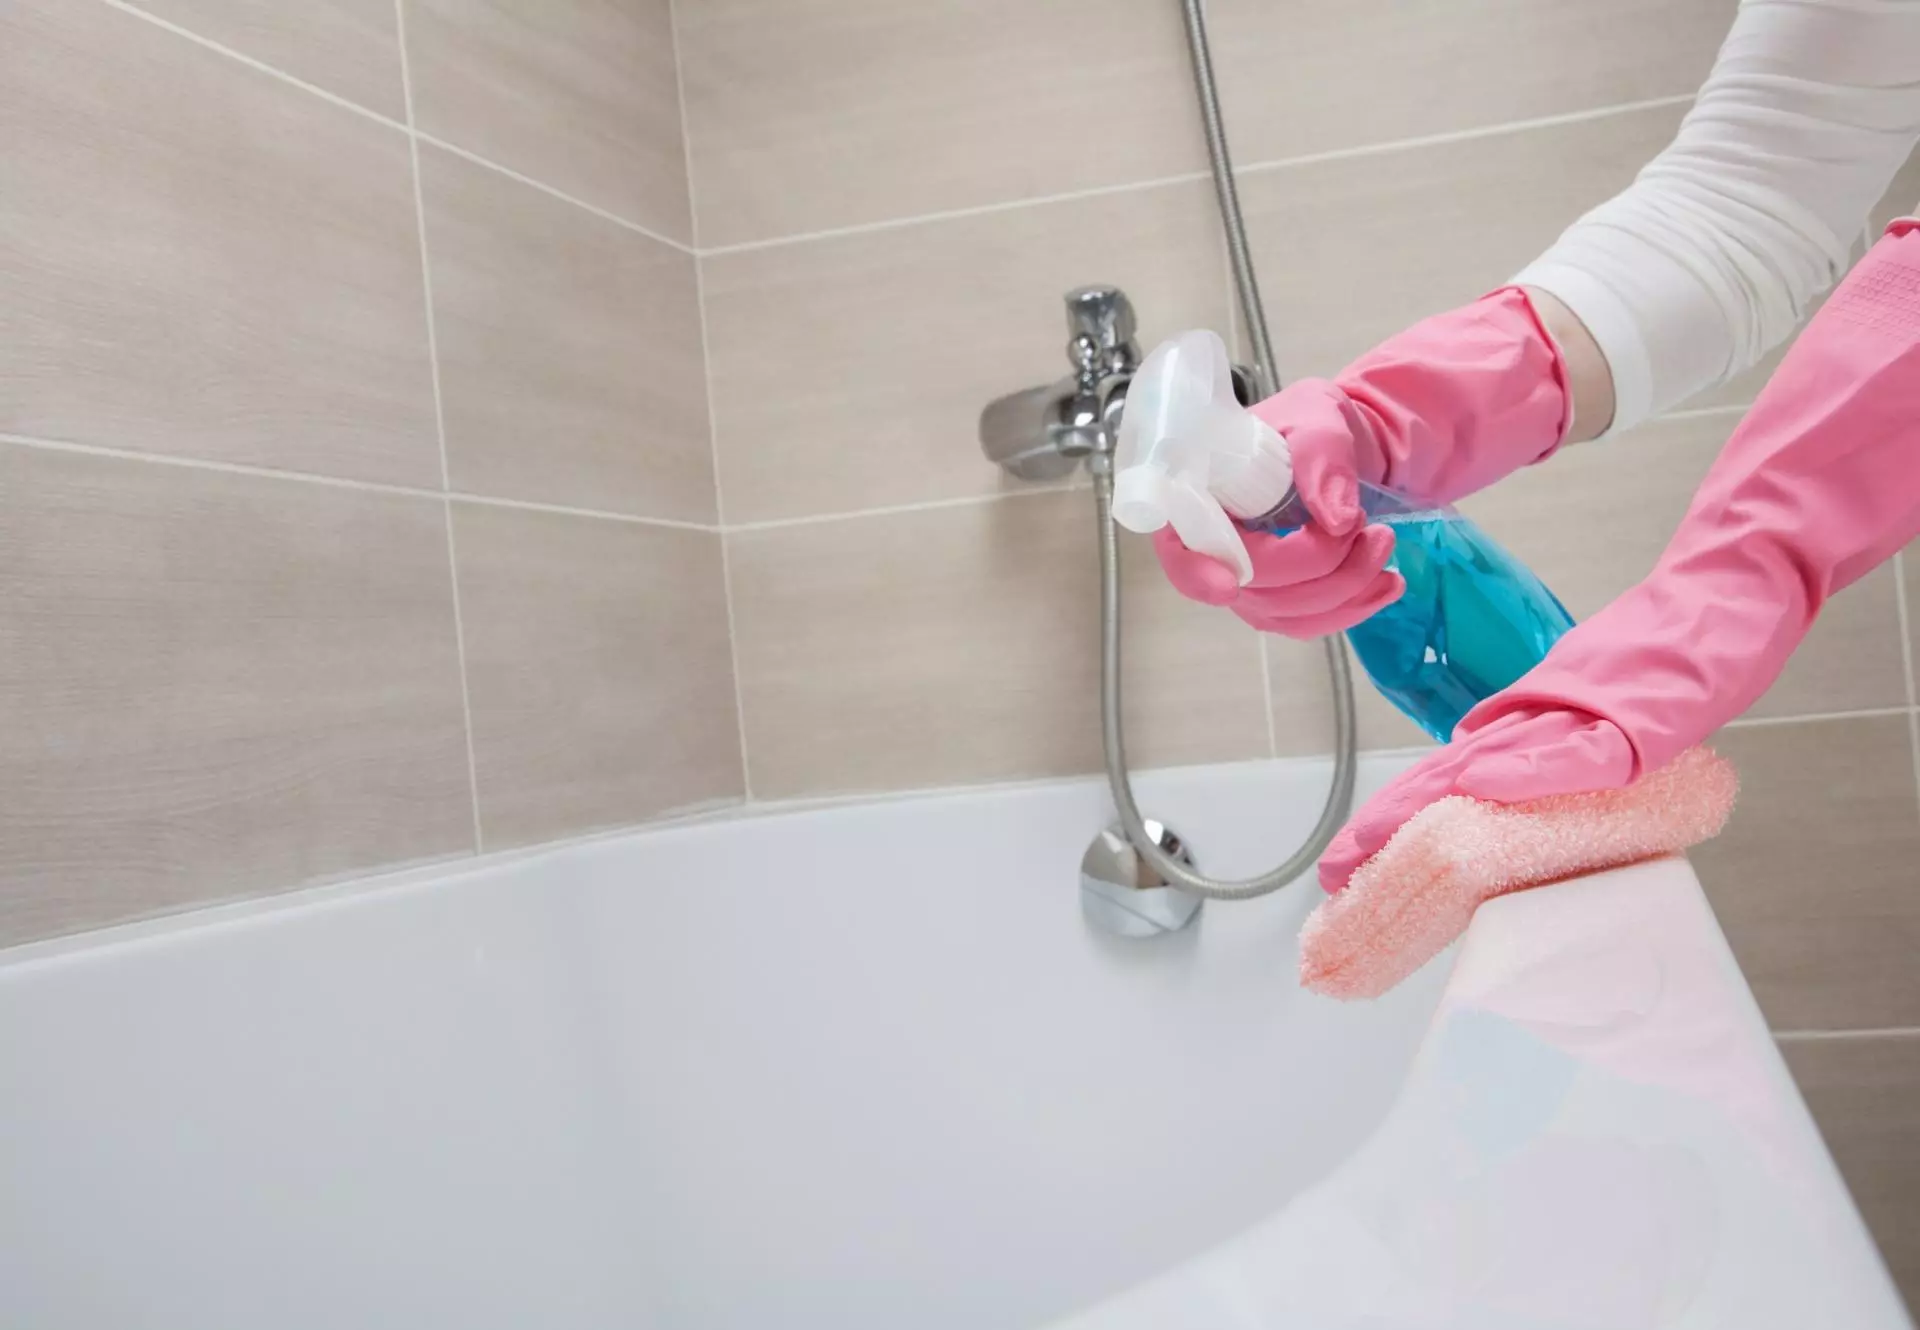 Καθαρισμός στο διαμέρισμα: Πώς να αφαιρέσετε στα δωμάτια και πού να ξεκινήσετε; Γρήγορο καθημερινό και εβδομαδιαίο καθαρισμό. Πώς να κάνετε ένα σχέδιο και να το περάσετε σωστά με τα χέρια σας; 11069_24